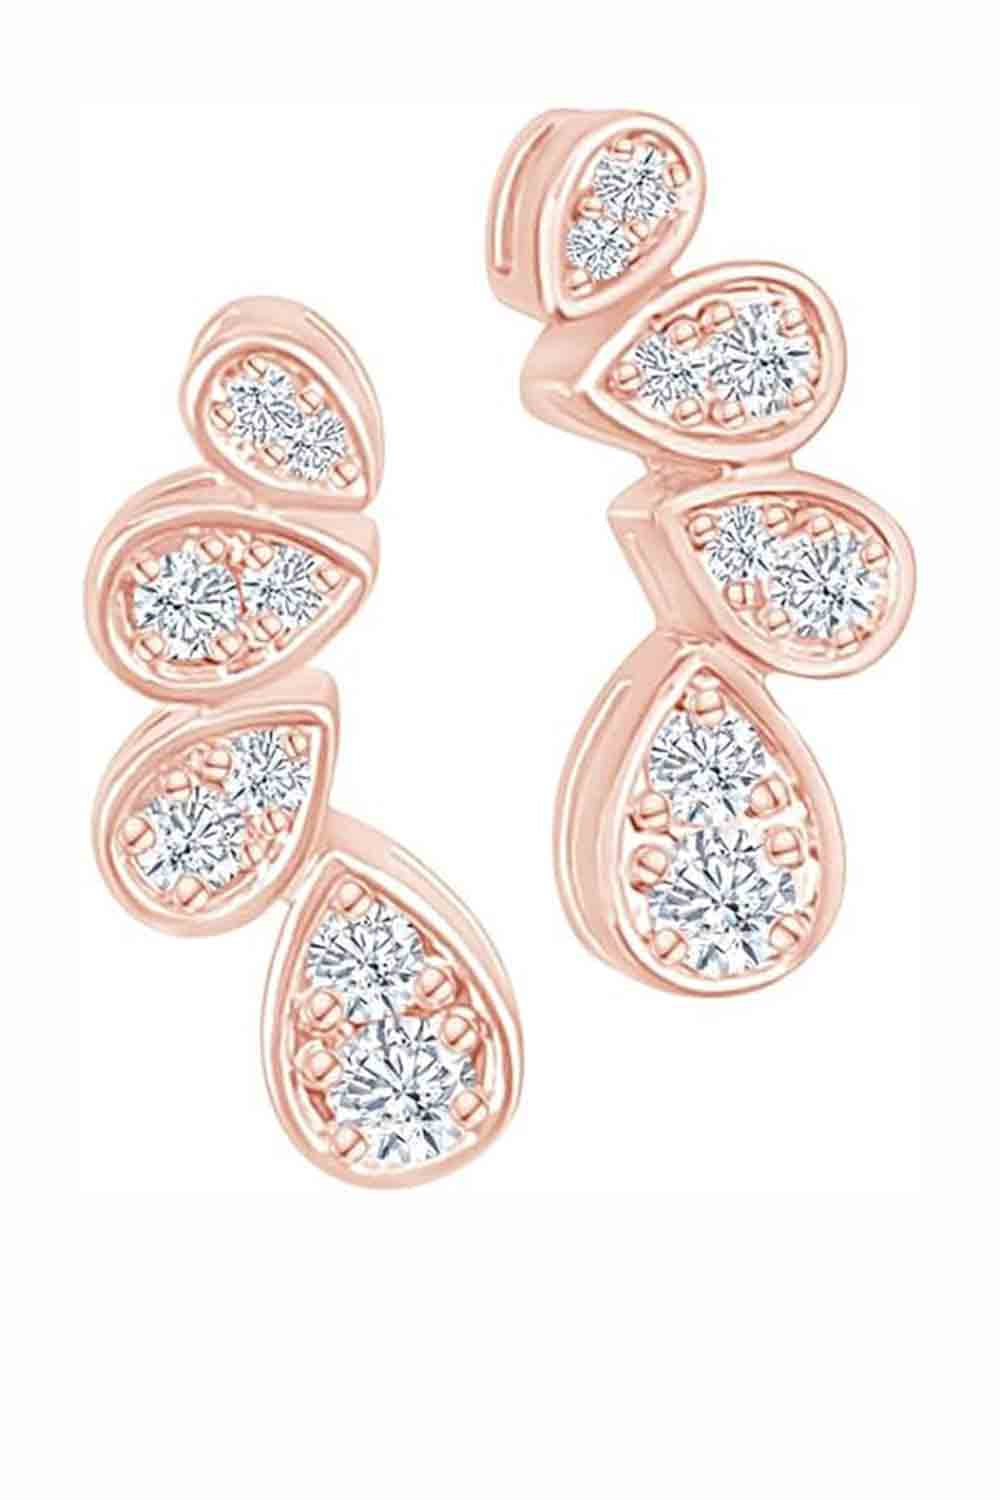 Rose Gold Color Cubic Zirconia Teardrop Stud Earrings for Women